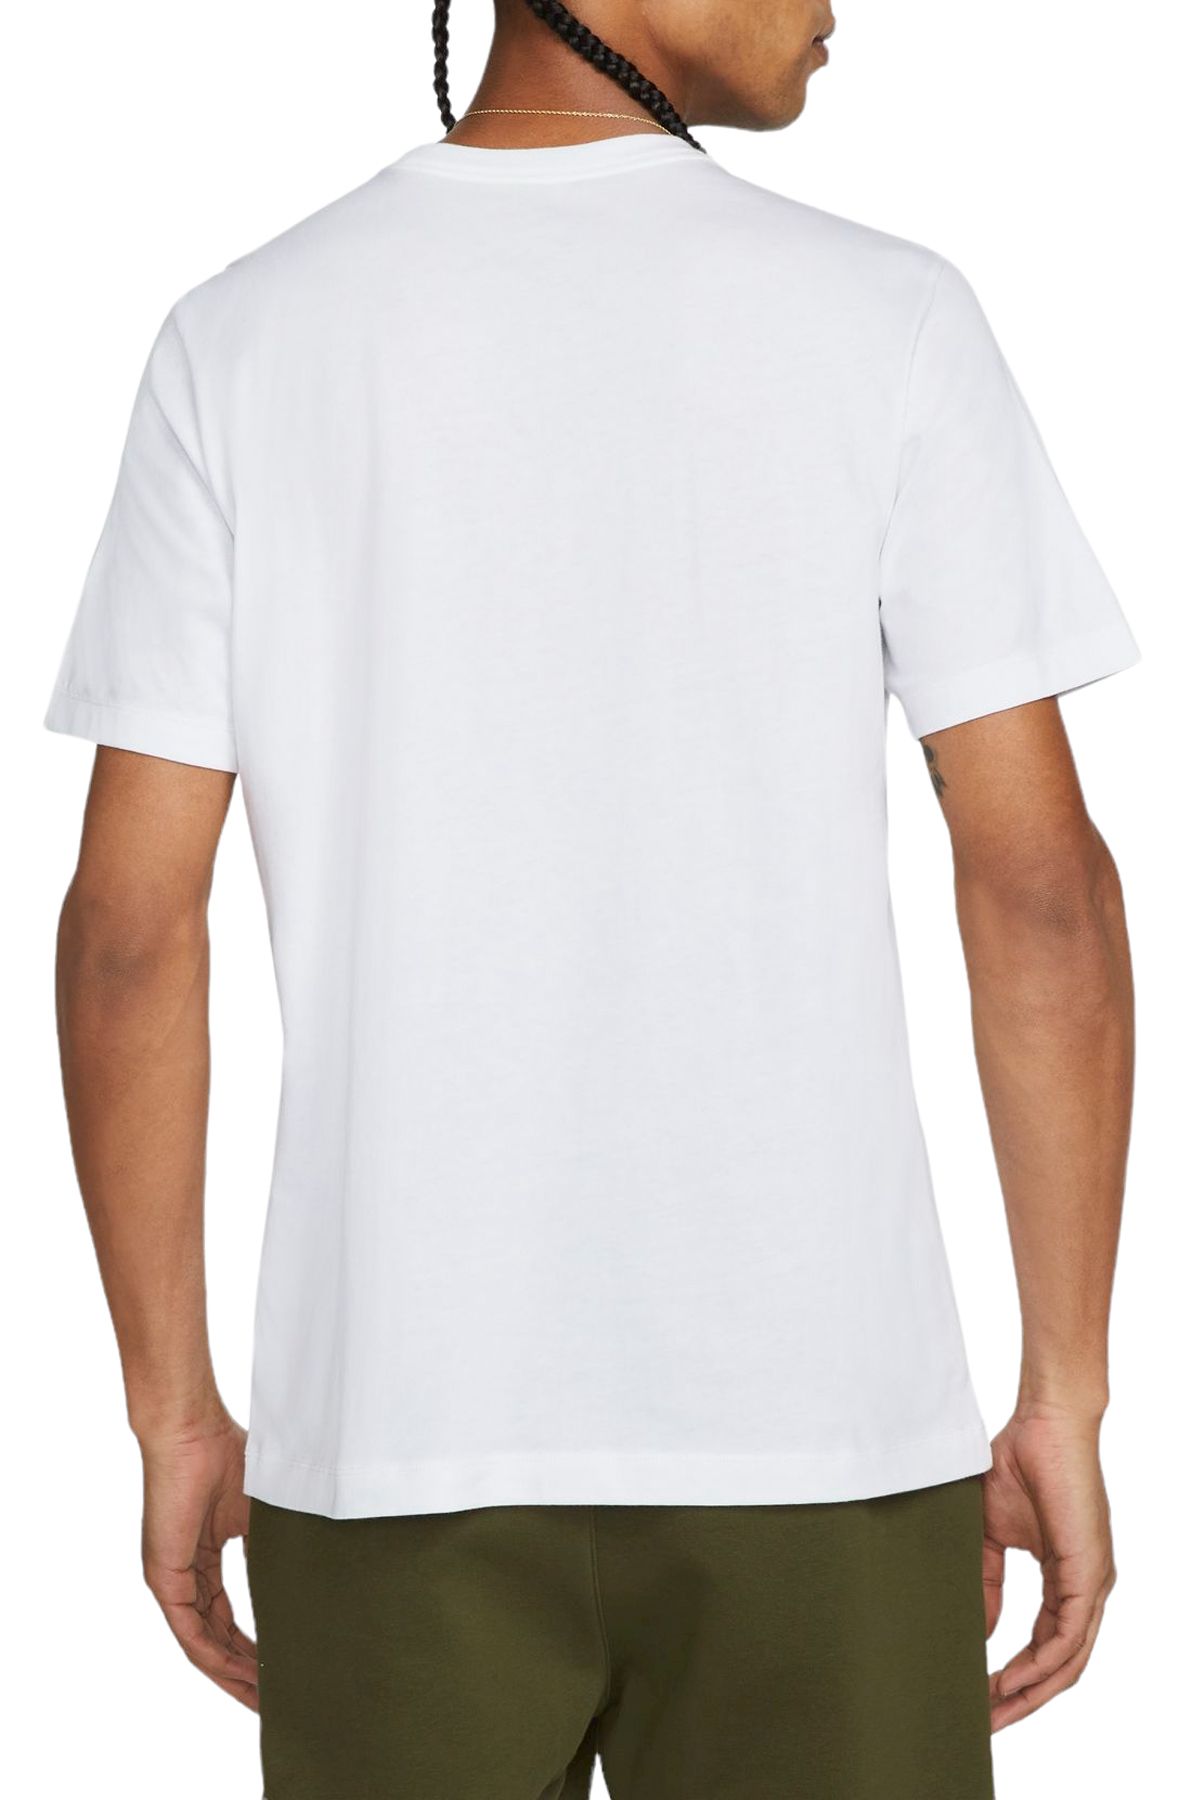 NIKE Sportswear T-Shirt DQ1087 100 - Shiekh